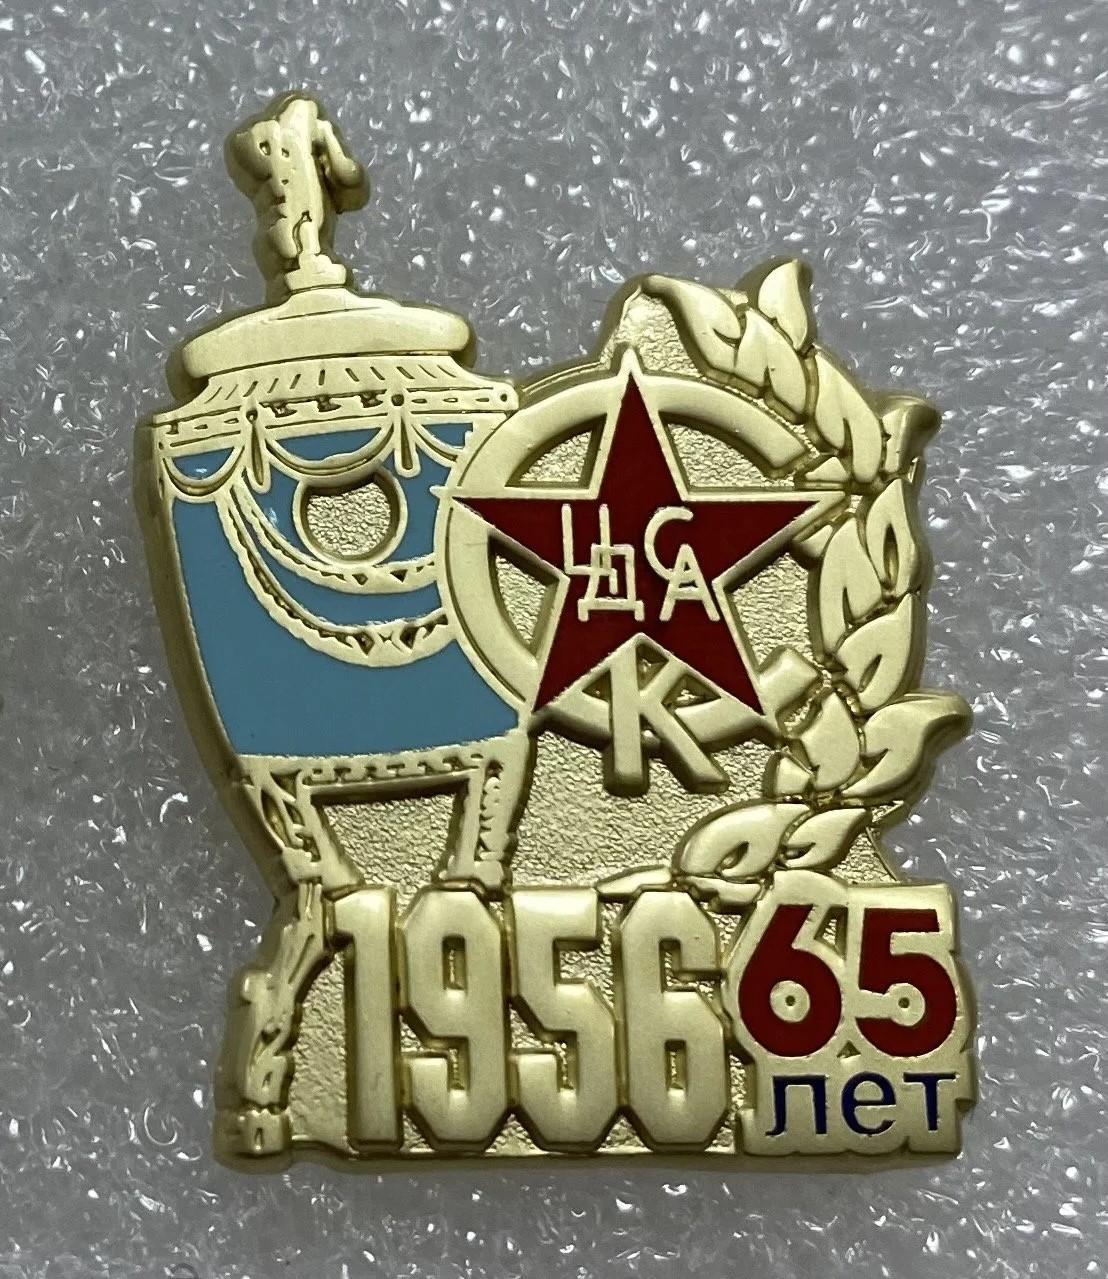 ЦДСА 65 лет Кубка СССР 1955 ЦСКА, значок-1